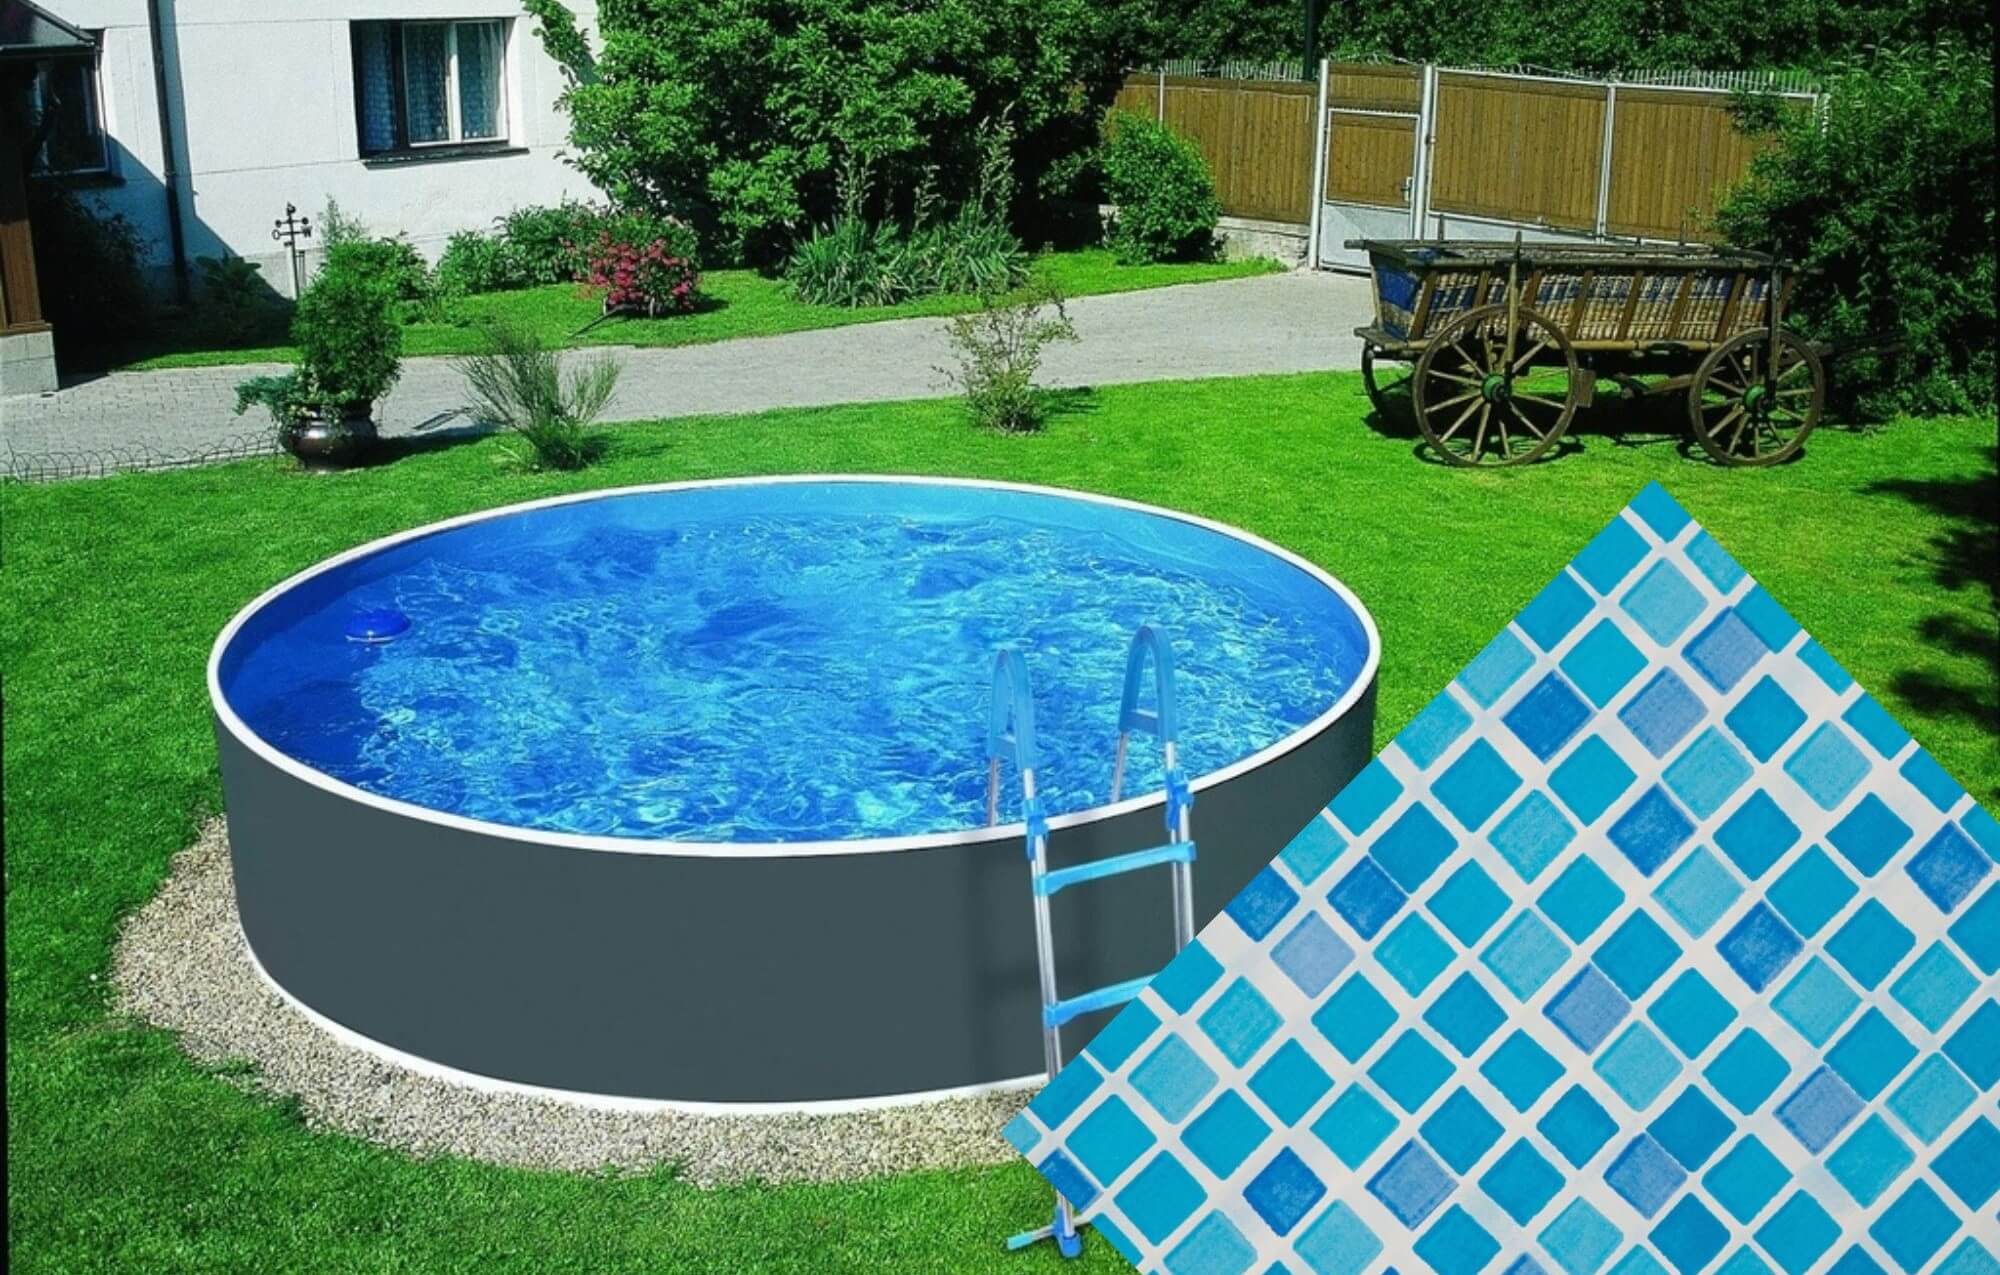 Planet Pool Náhradní bazénová fólie Mosaic pro bazén 5,5 m x 3,7 m x 1,2 m